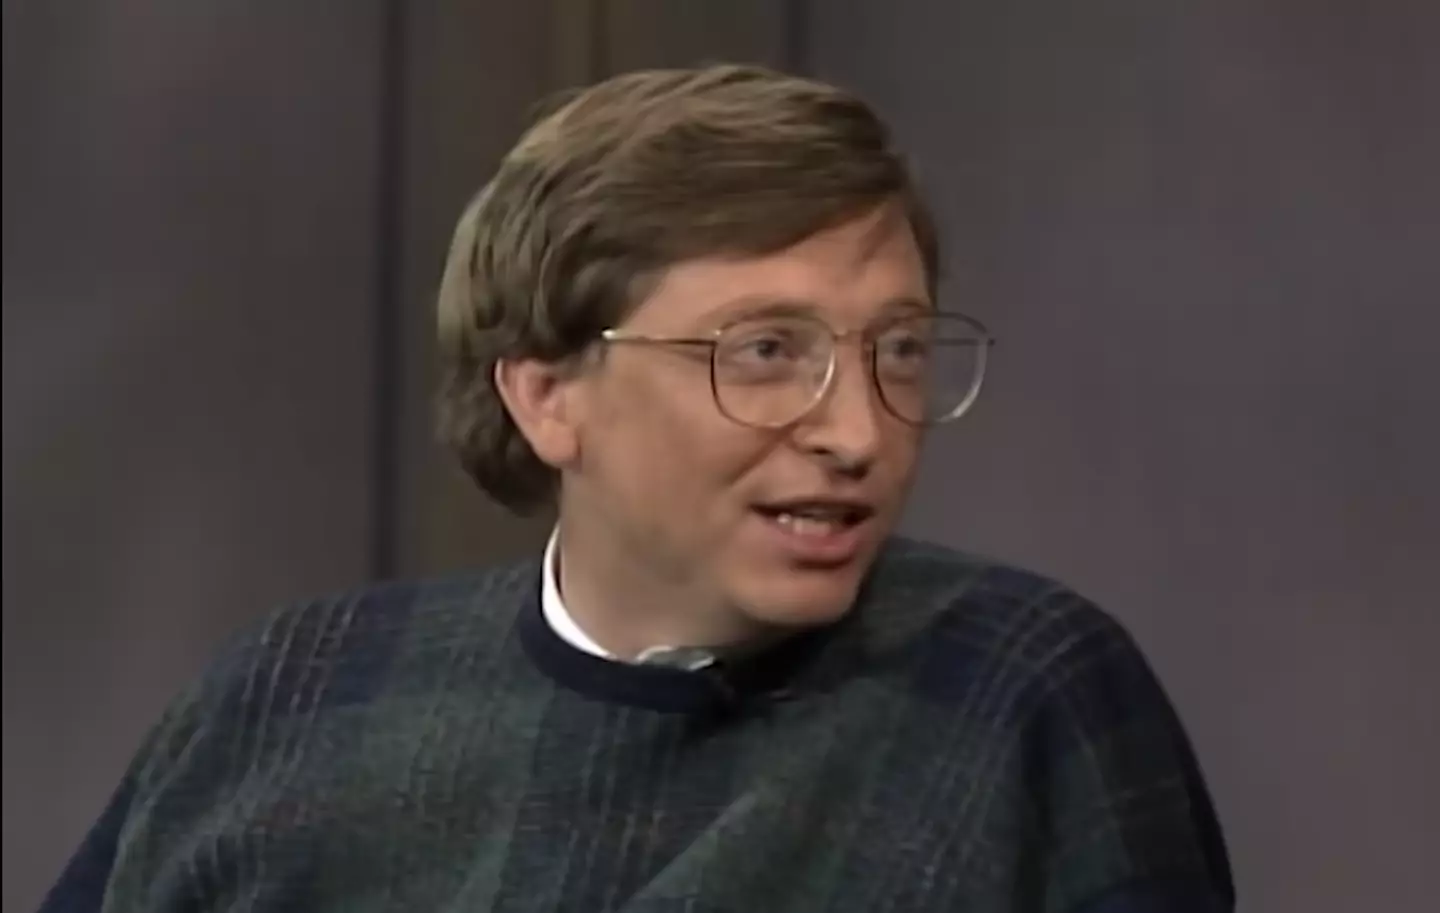 Bill Gates appeared on Letterman in 1995.